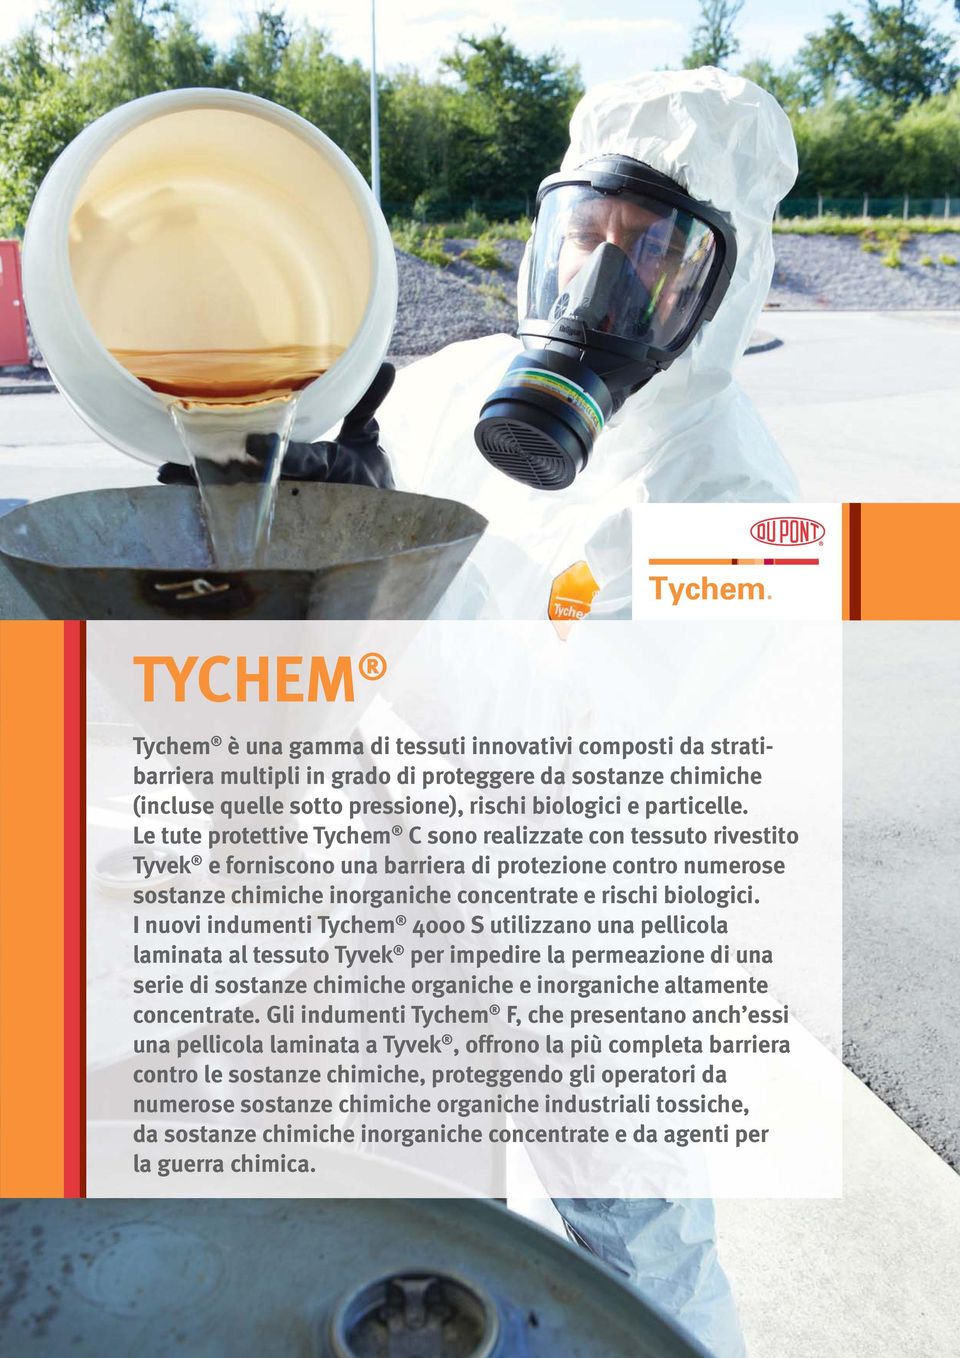 I nuovi indumenti Tychem 4000 S utilizzano una pellicola laminata al tessuto Tyvek per impedire la permeazione di una serie di sostanze chimiche organiche e inorganiche altamente concentrate.